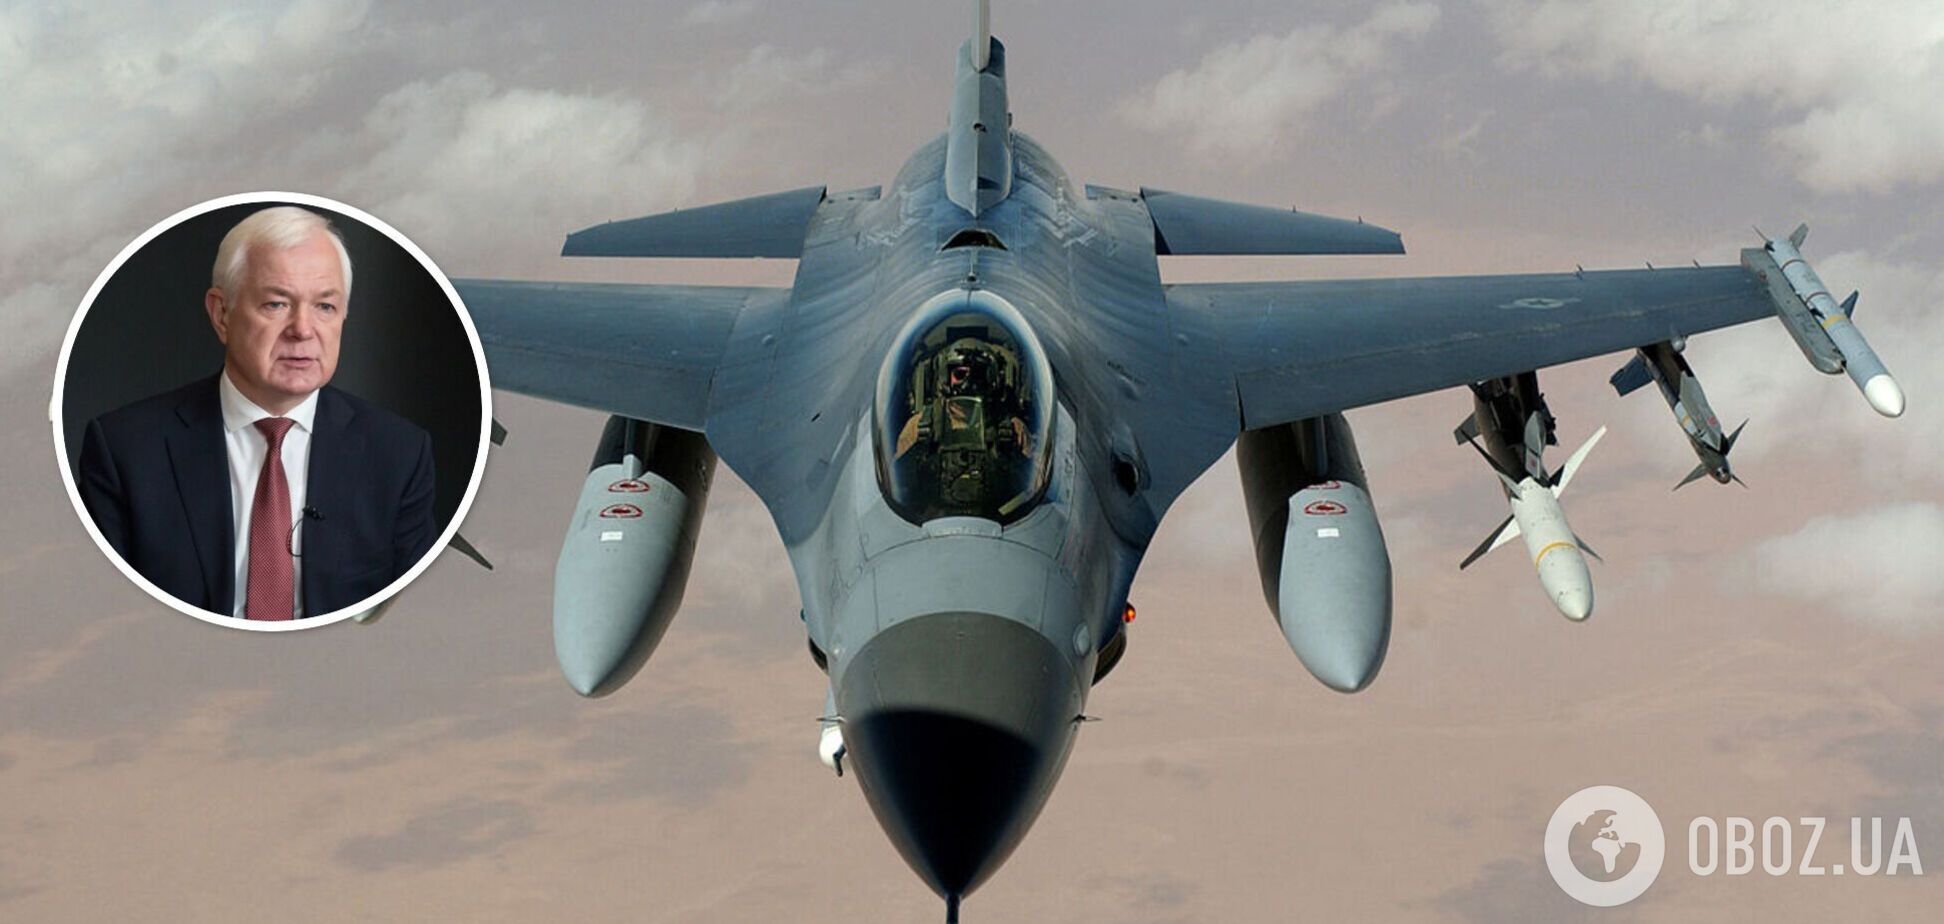 Системний повітряний щит: генерал назвав кількість F-16, яка захистить від путінських ракет